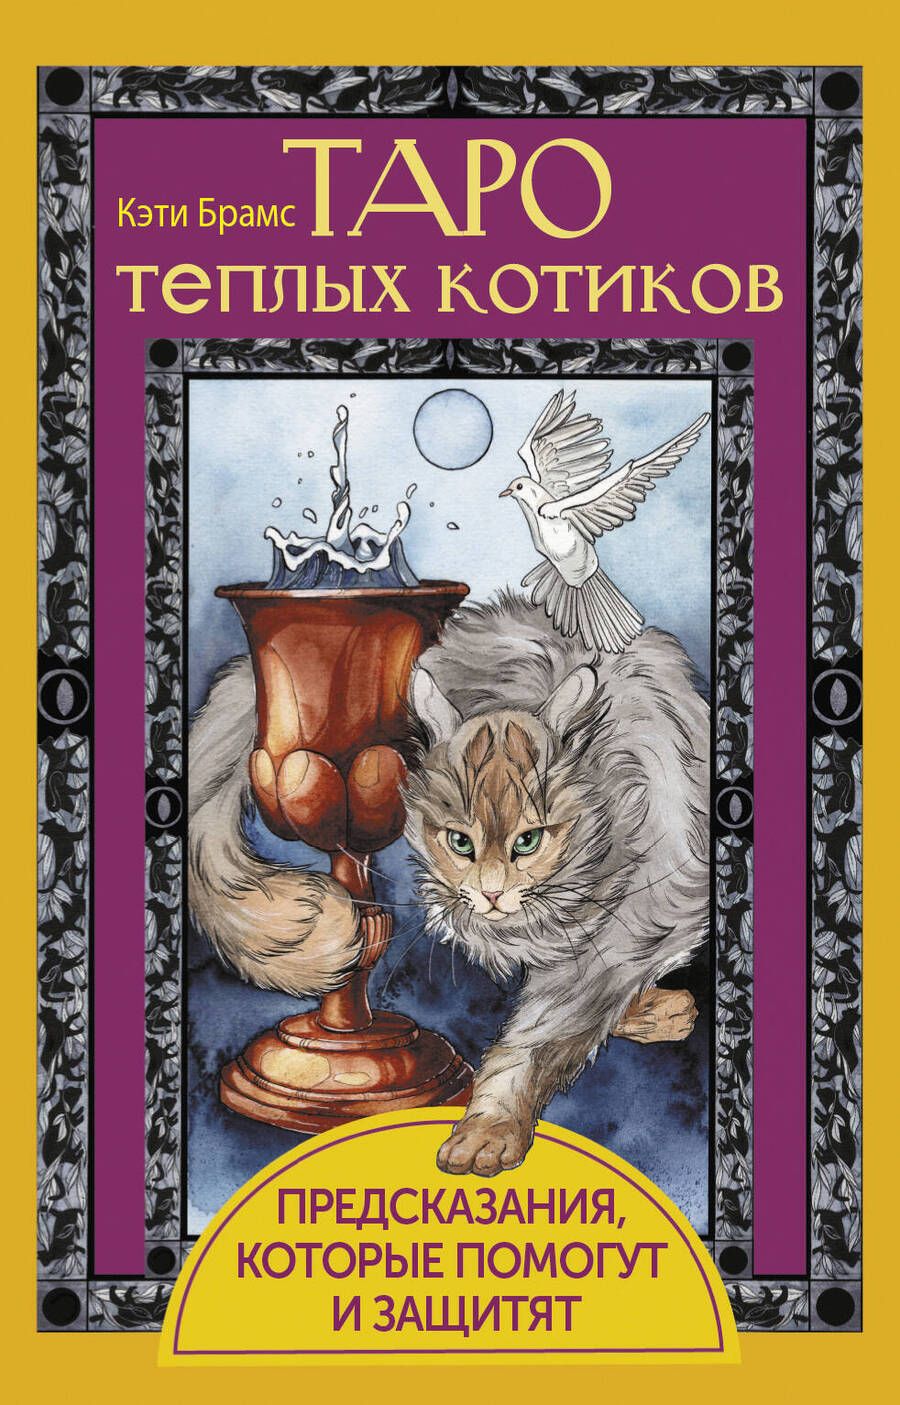 Обложка книги "Брамс: Таро теплых котиков. Предсказания, которые помогут и защитят"